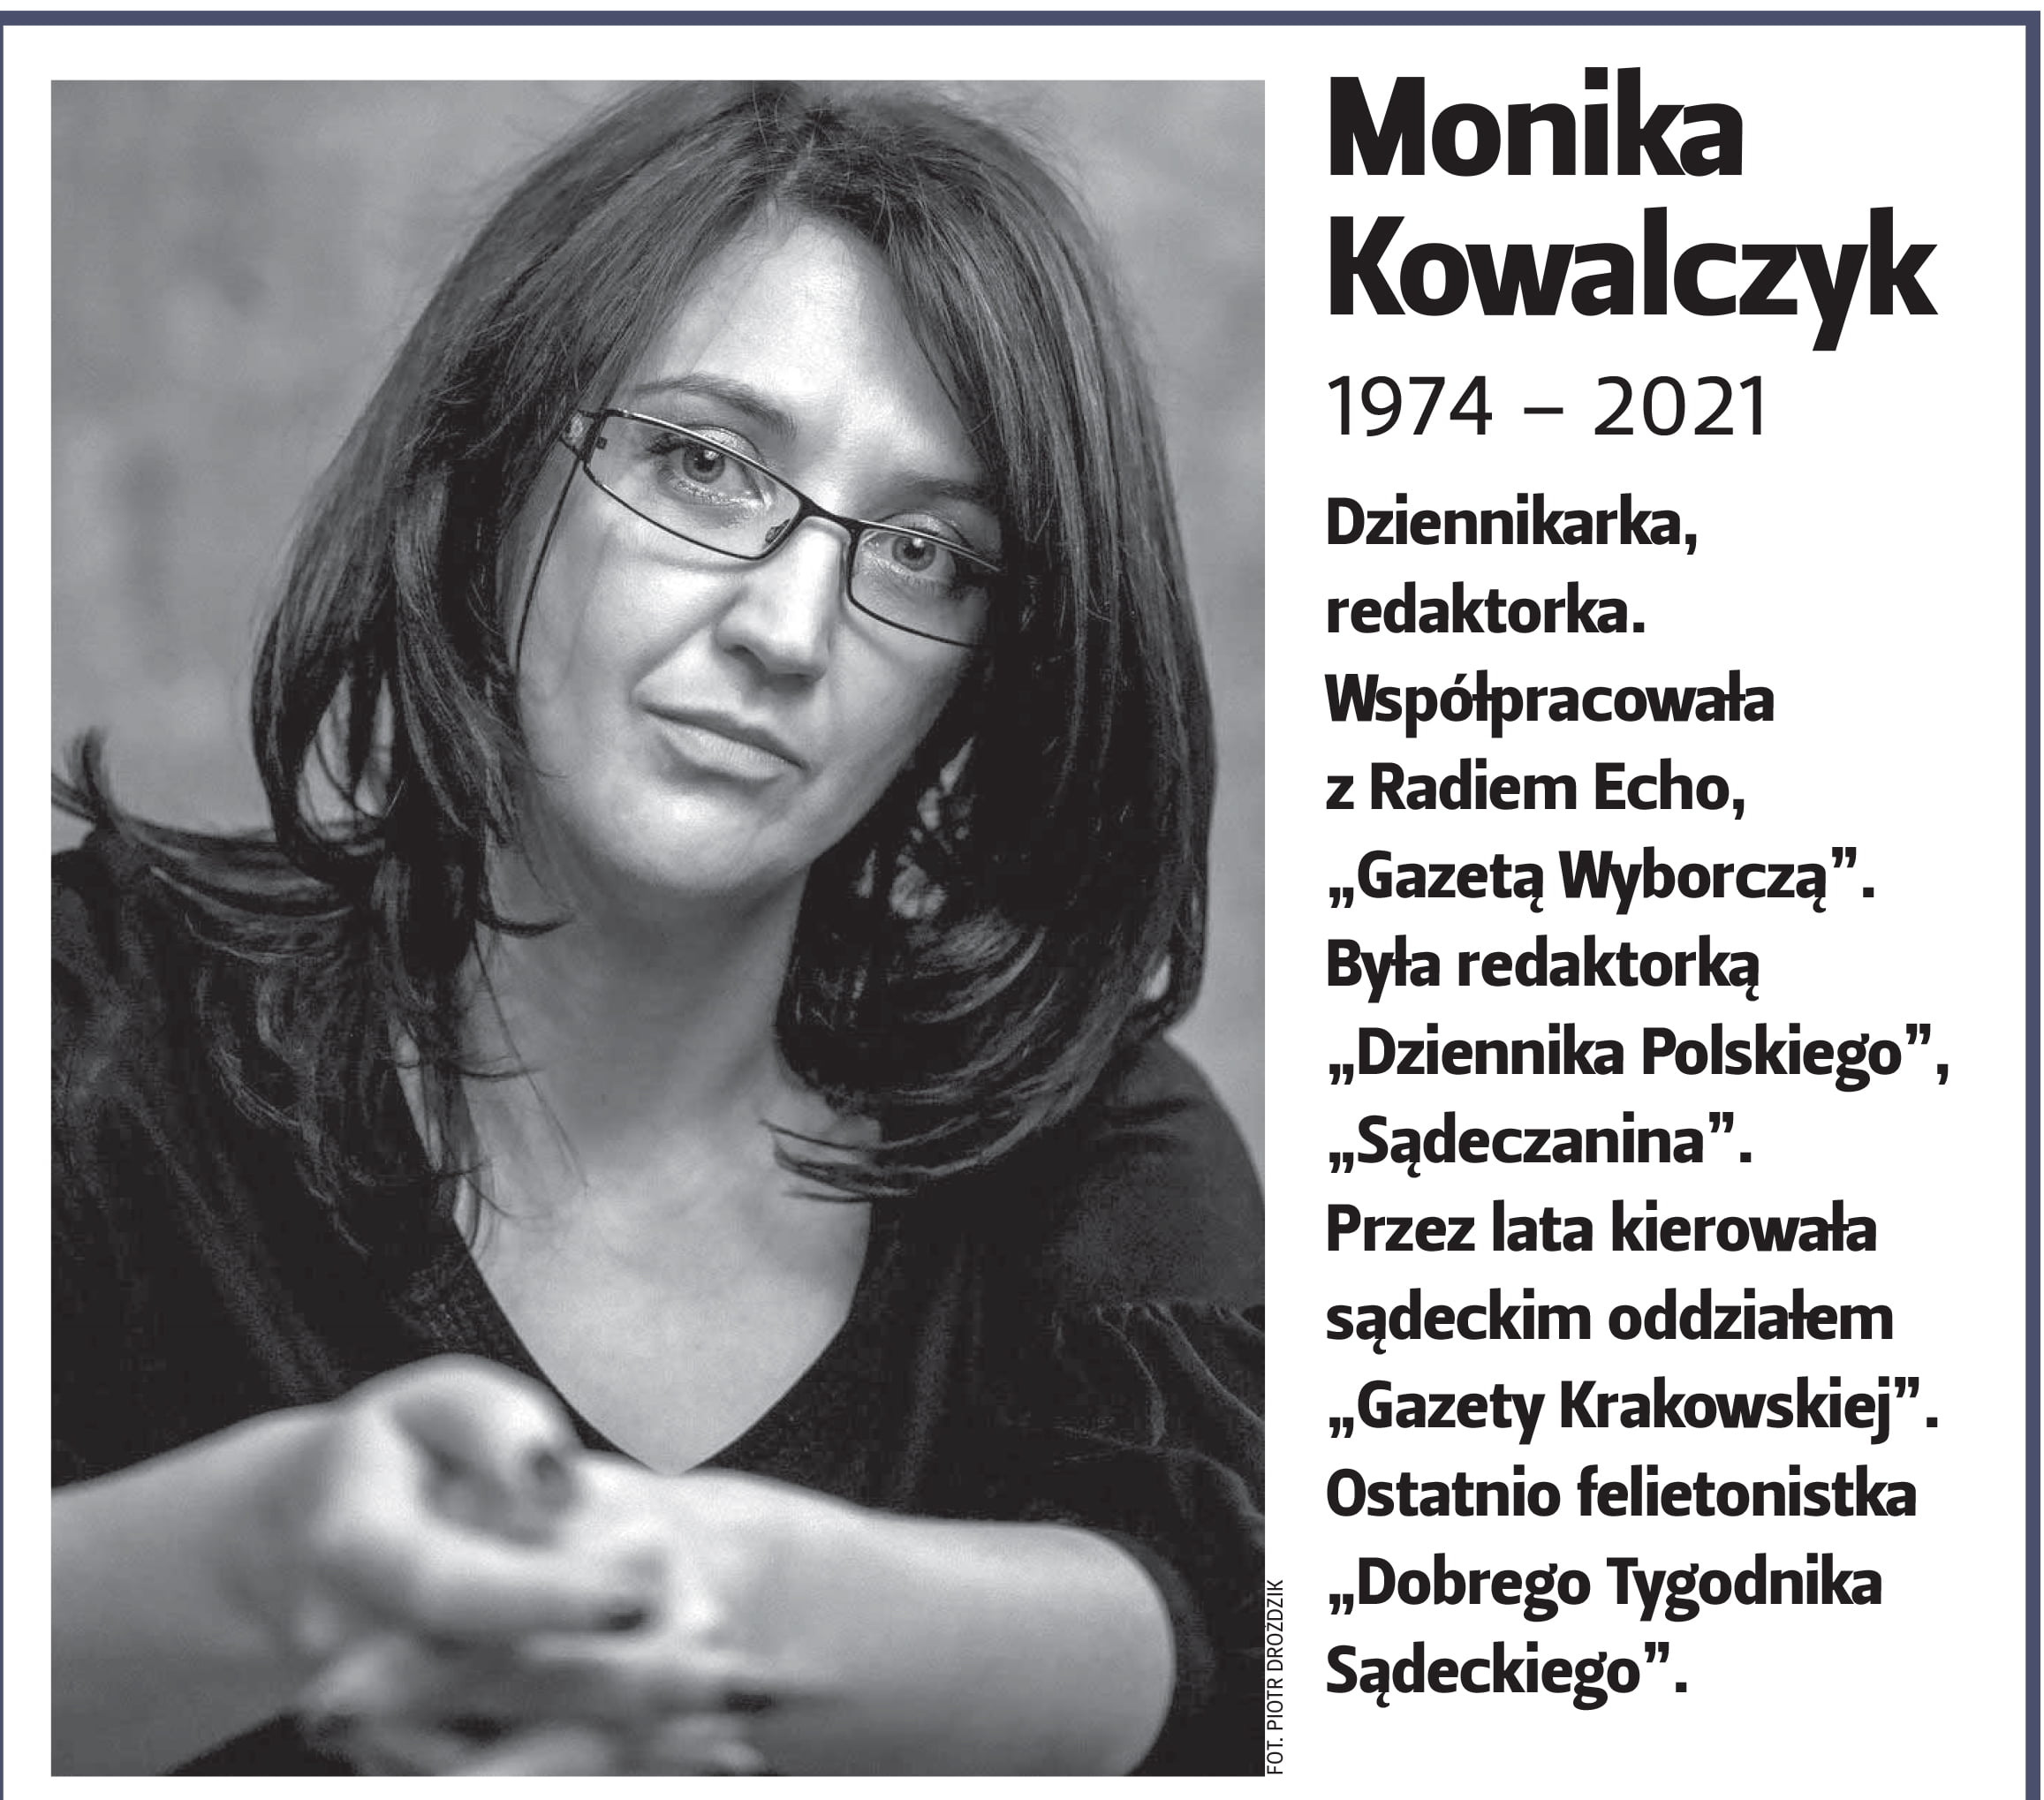 Monika Kowalczyk